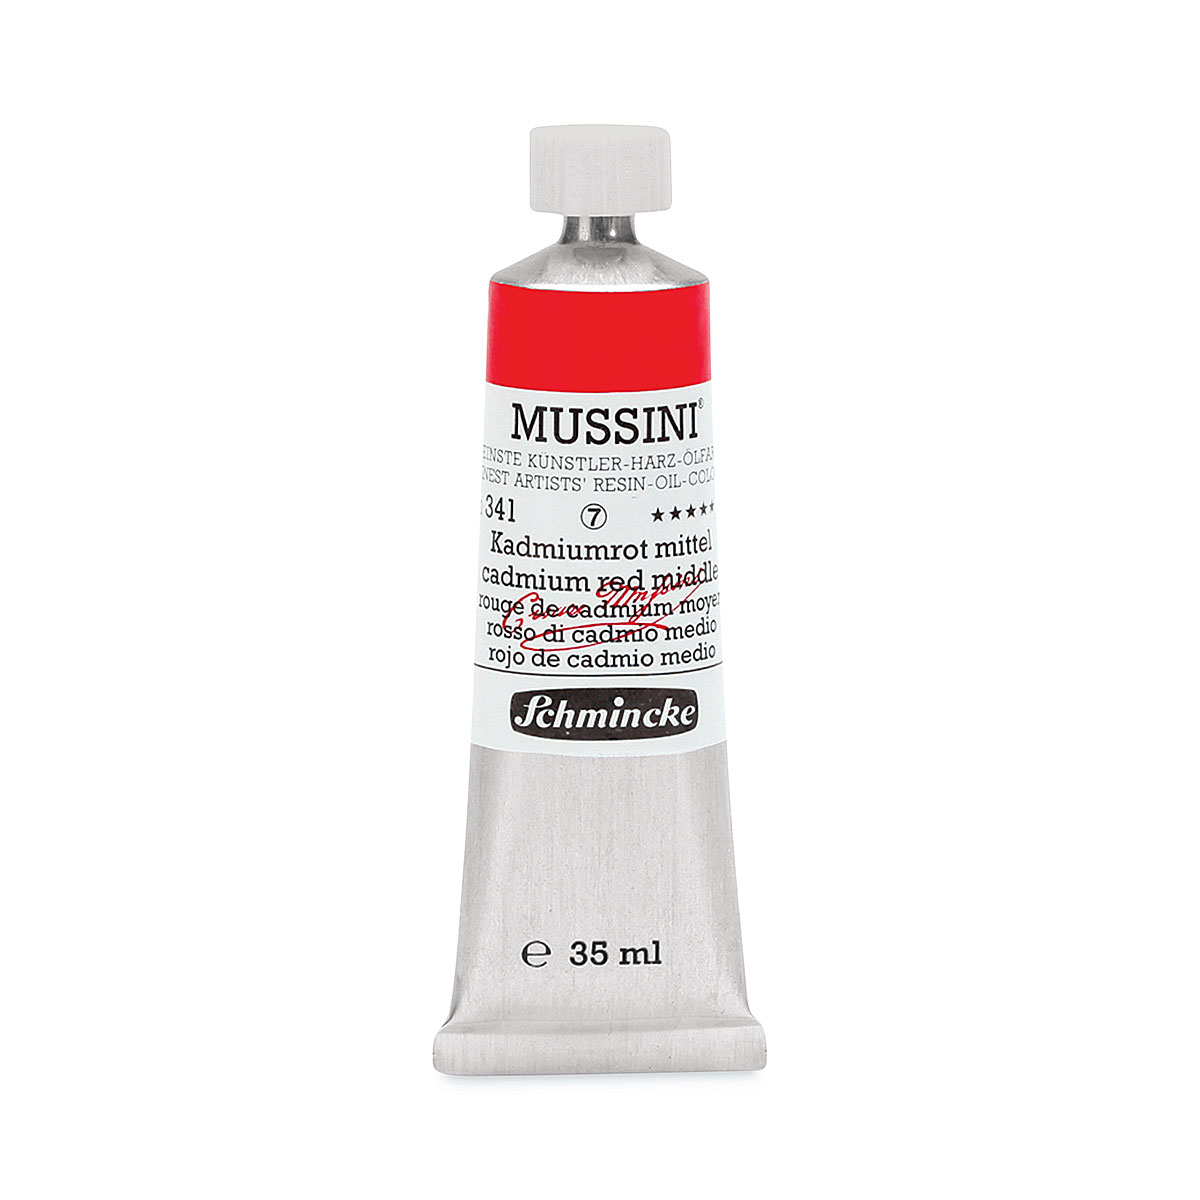 Arthipo  Schmincke Mussini Translucent White Oil Paint 35 ml